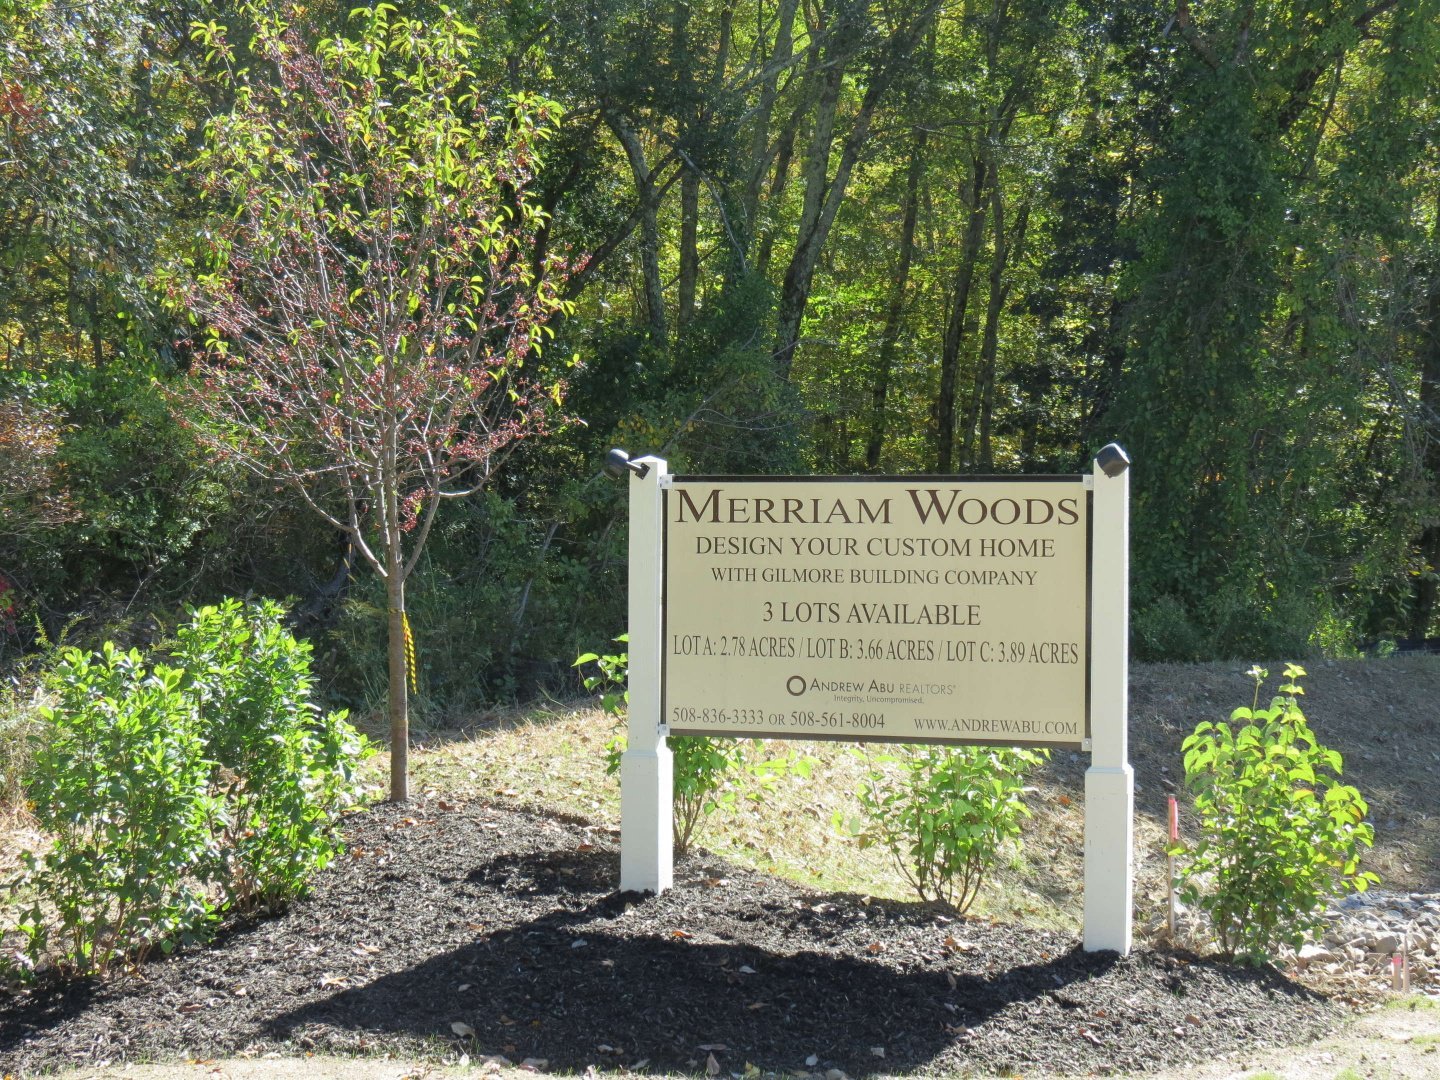 Photo of Merriam Woods Sign